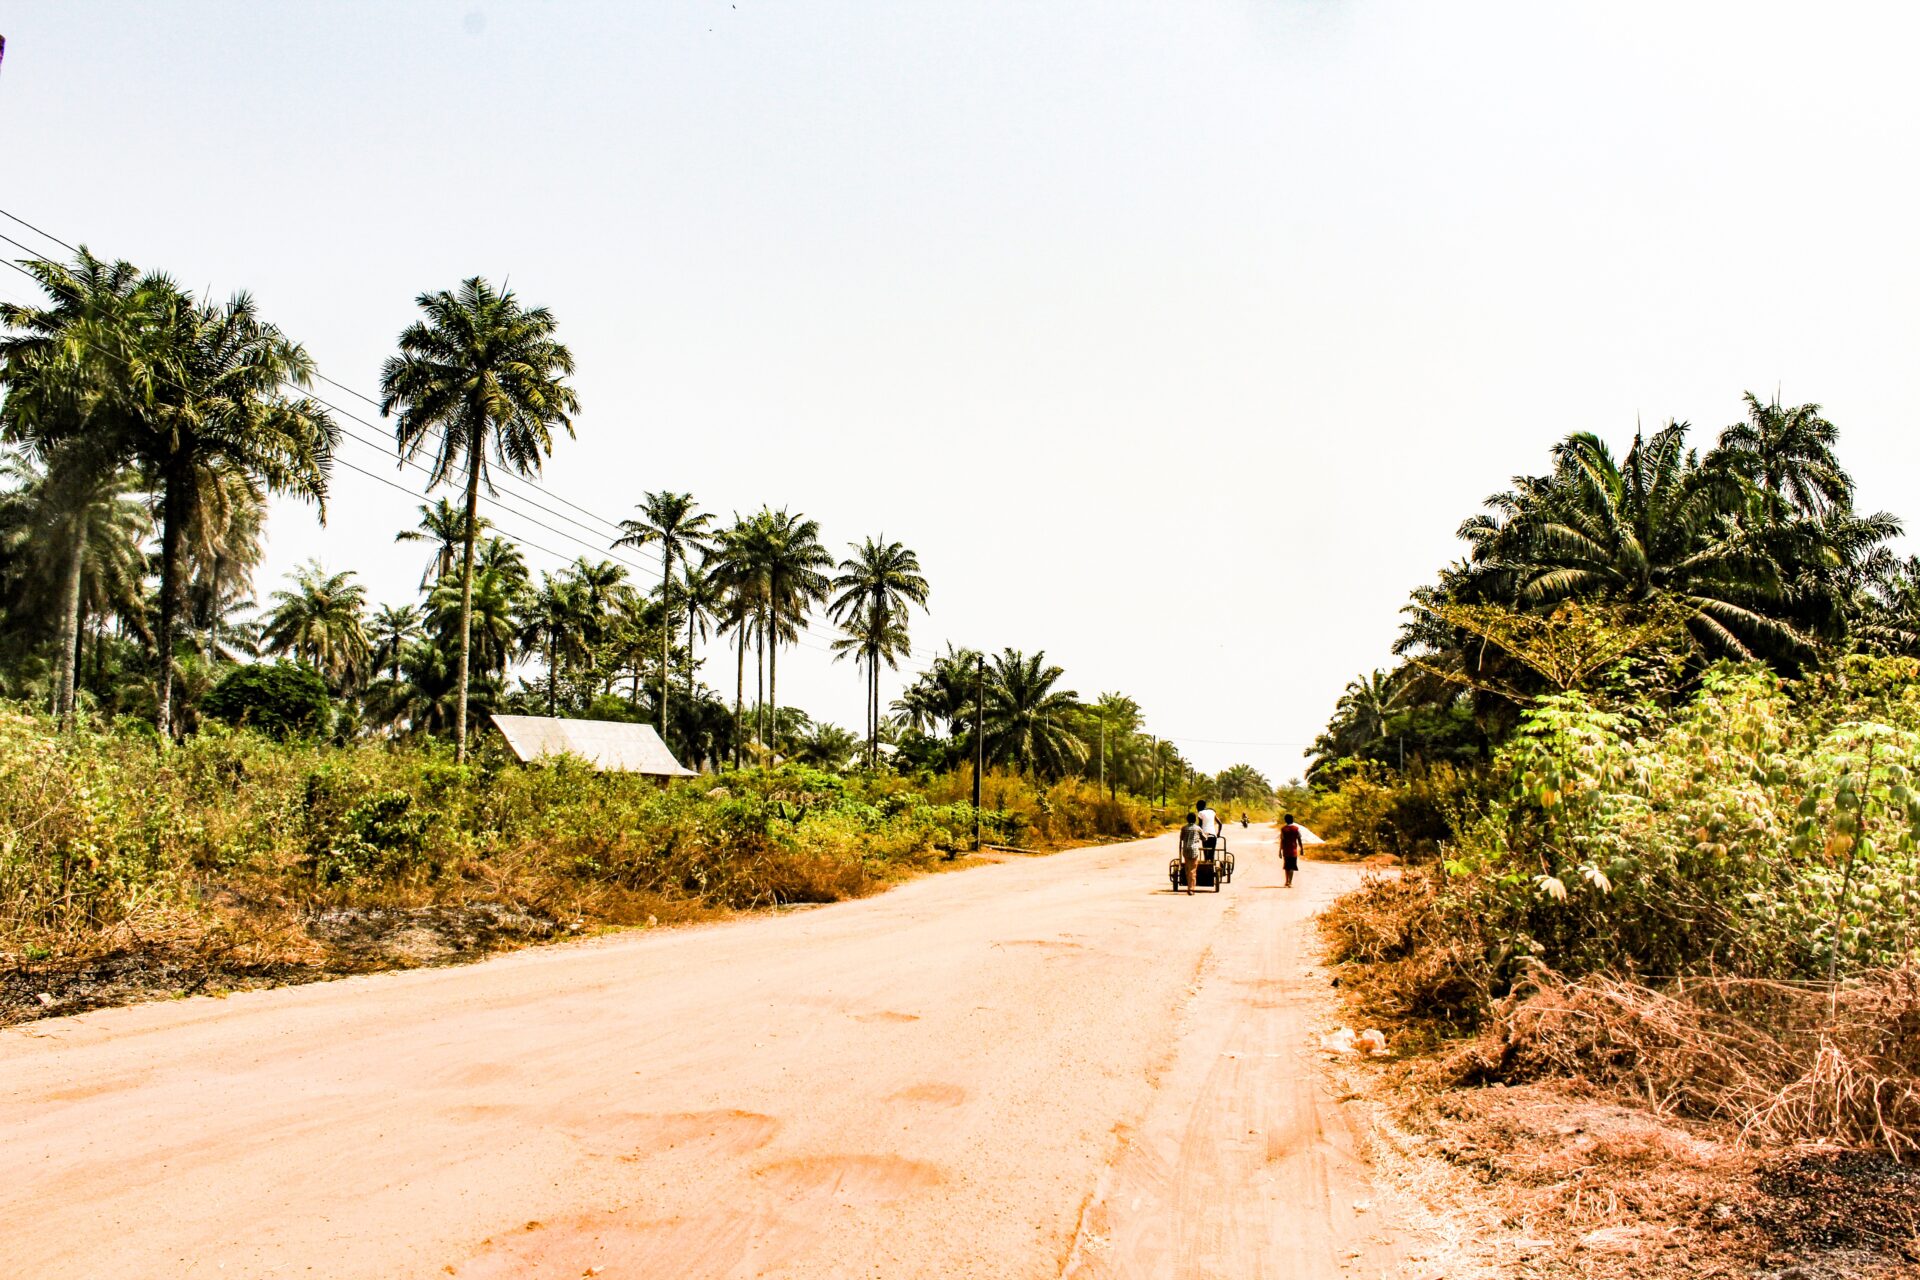 An open road in Eastern Nigeria